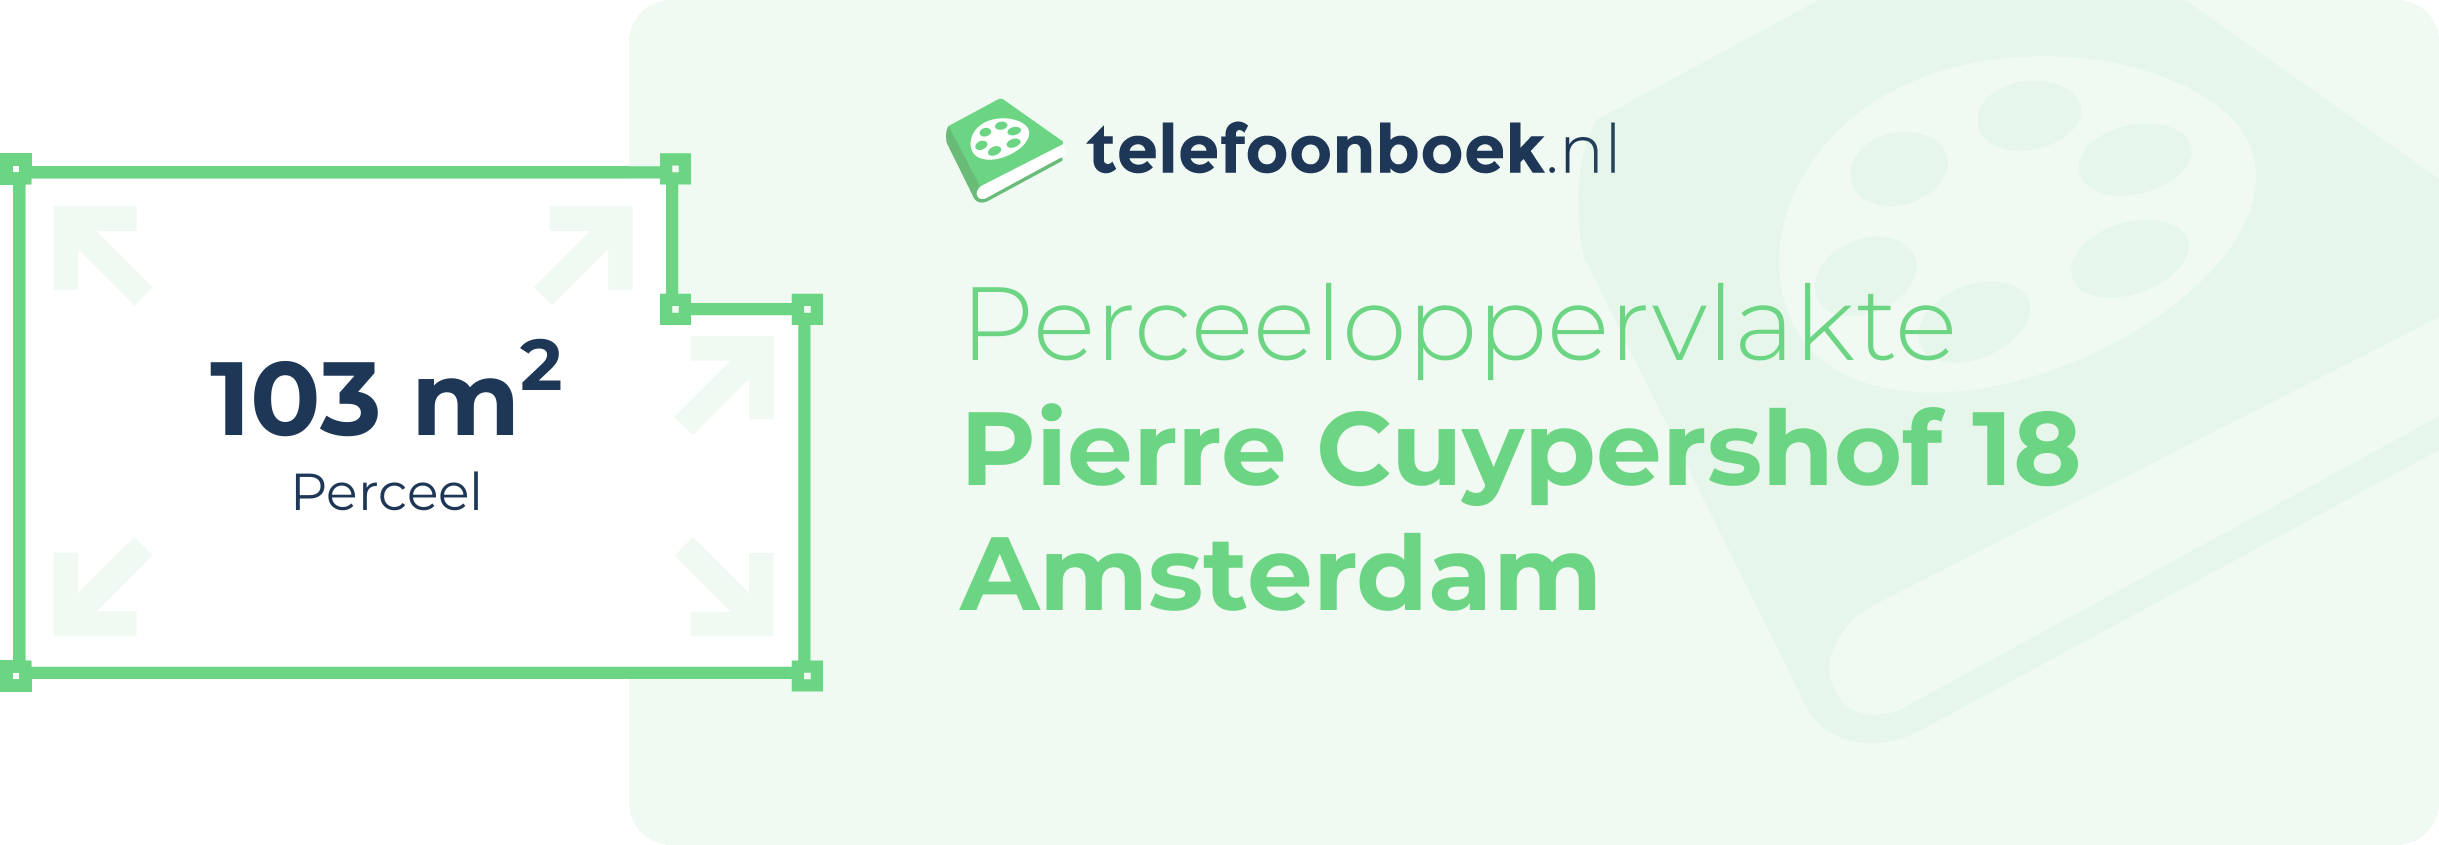 Perceeloppervlakte Pierre Cuypershof 18 Amsterdam